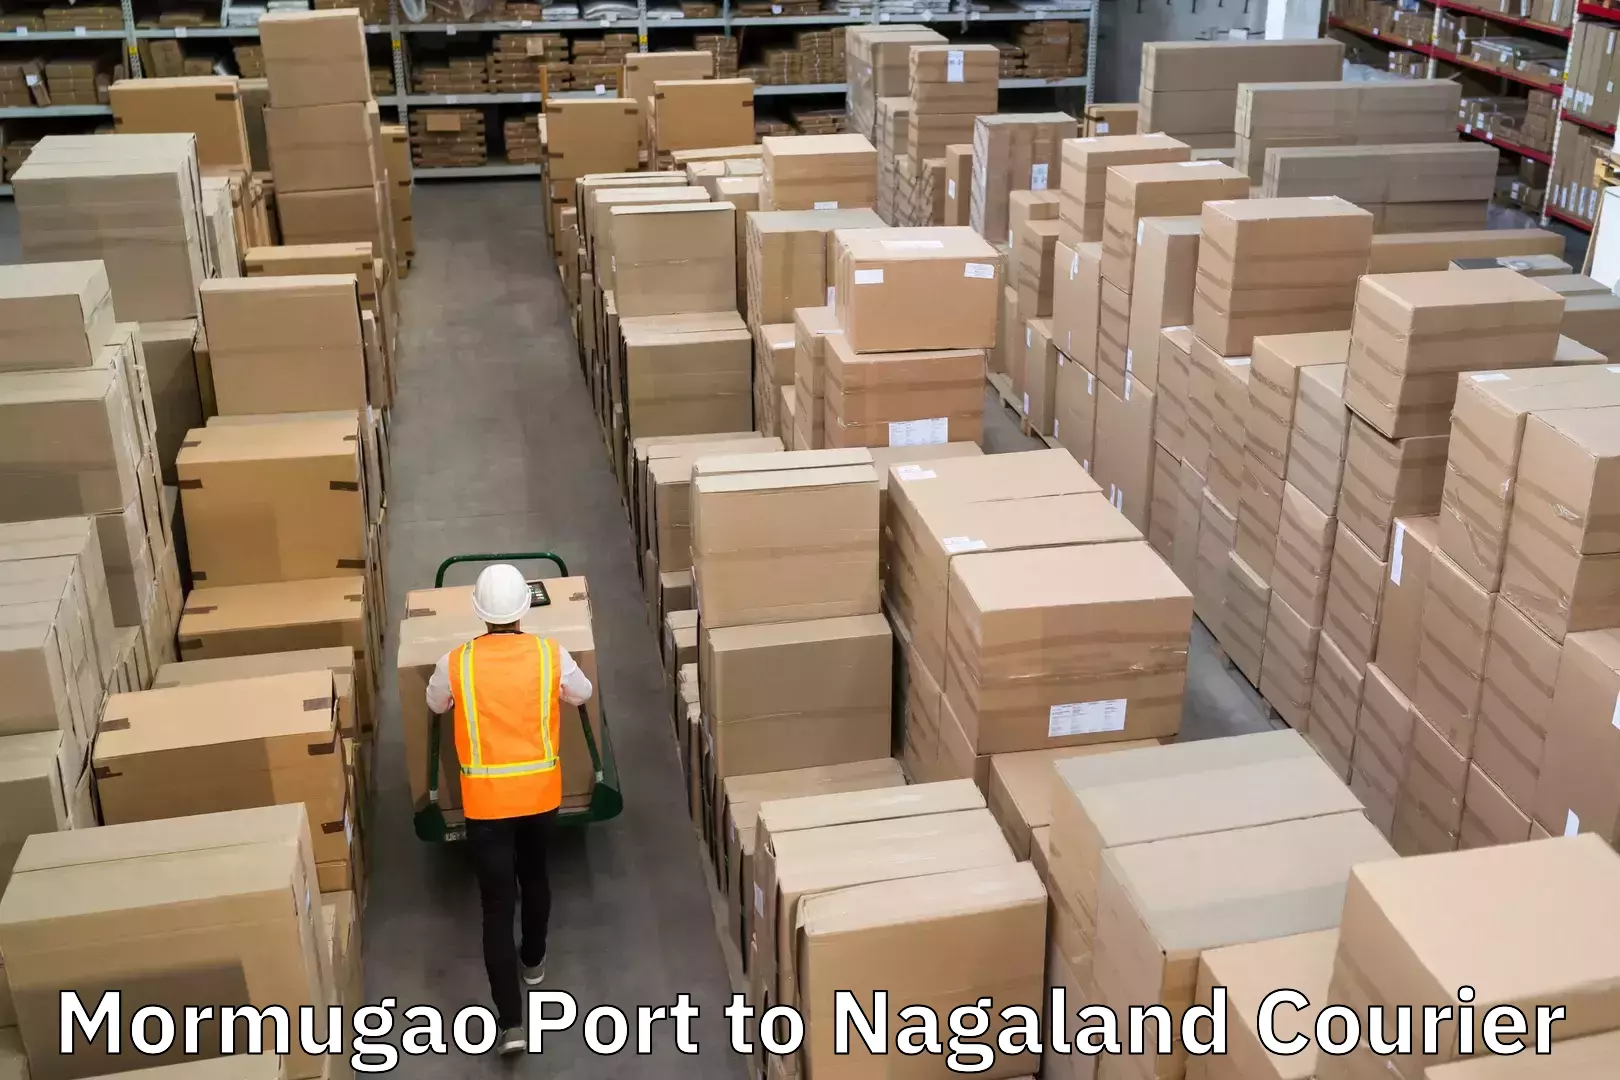 24/7 courier service Mormugao Port to Nagaland